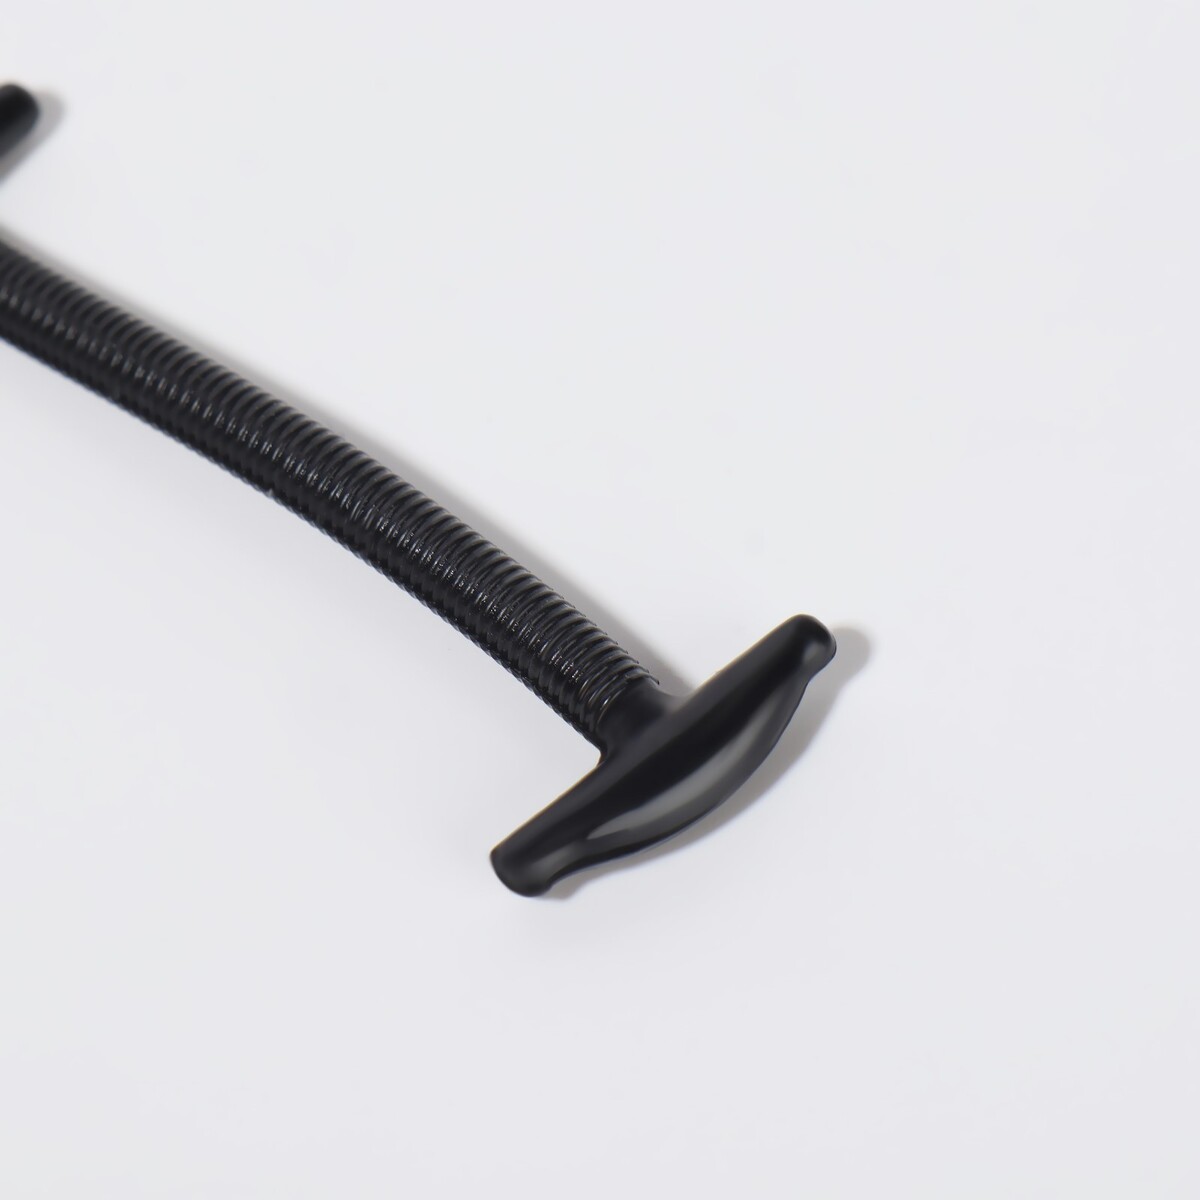 фото Набор шнурков для обуви, 10 шт, силиконовые, круглые, d = 3 мм, 4 см, цвет черный onlitop